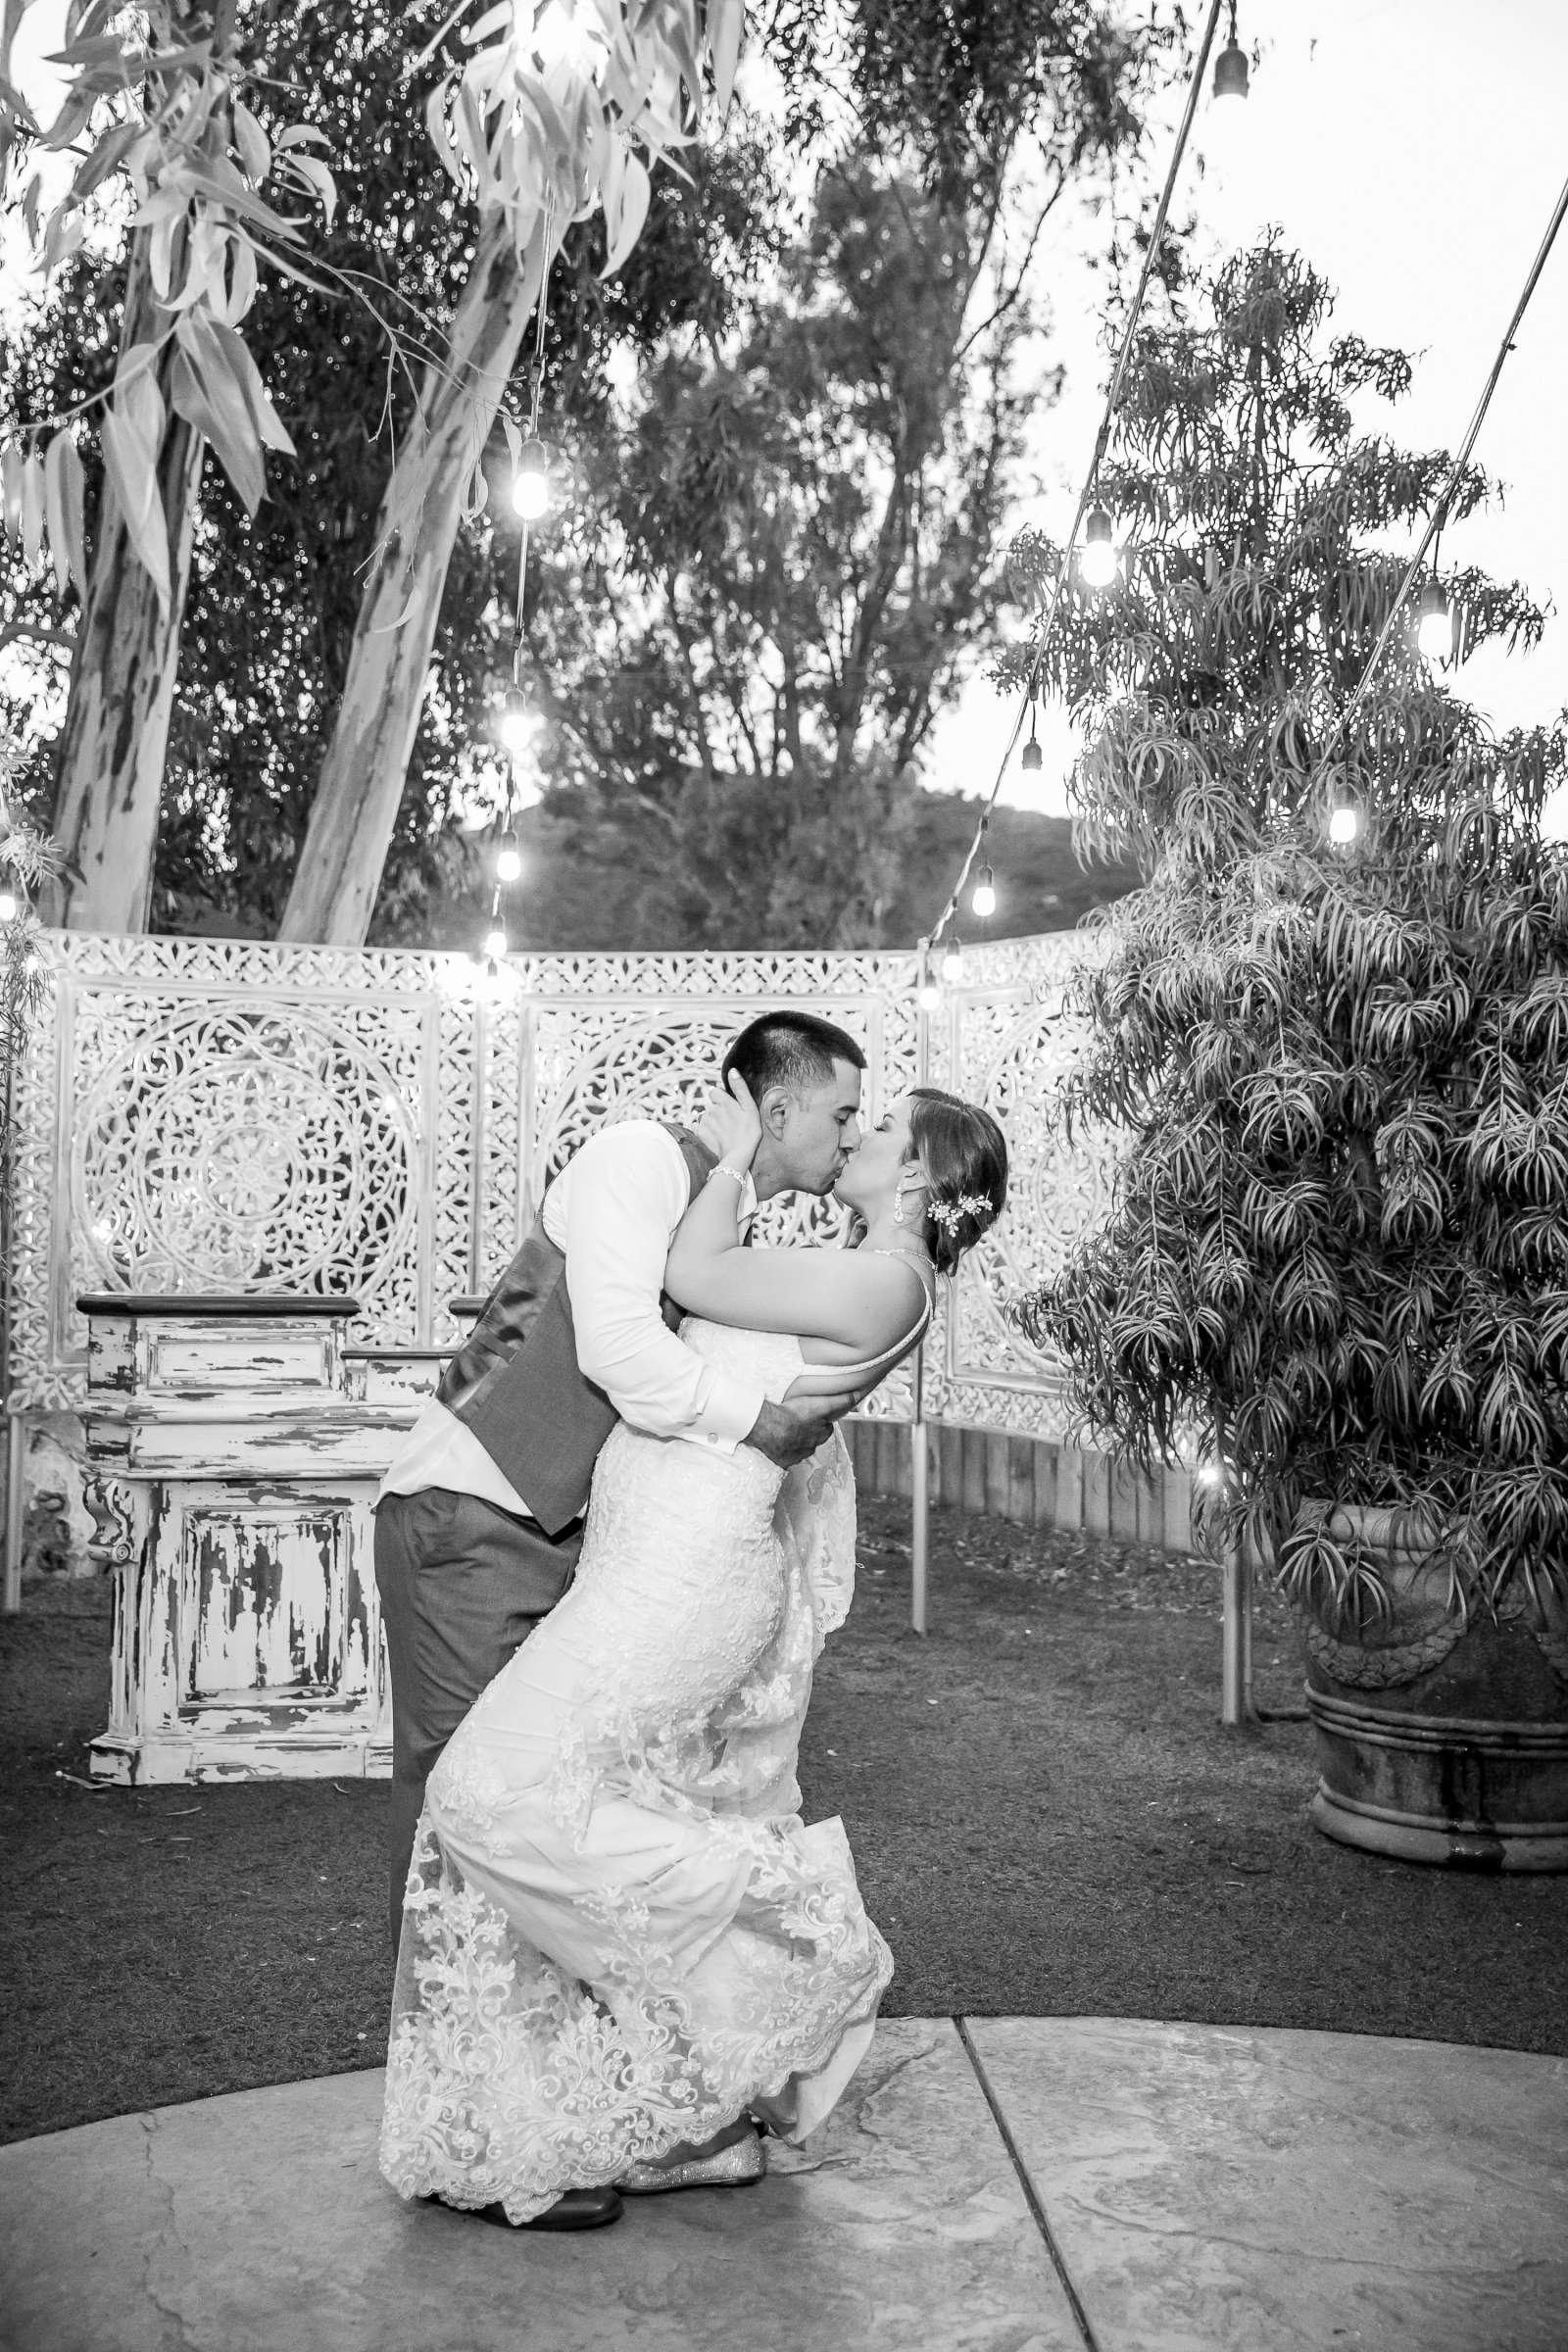 Twin Oaks House & Gardens Wedding Estate Wedding, Merrilynn and Trey Wedding Photo #101 by True Photography